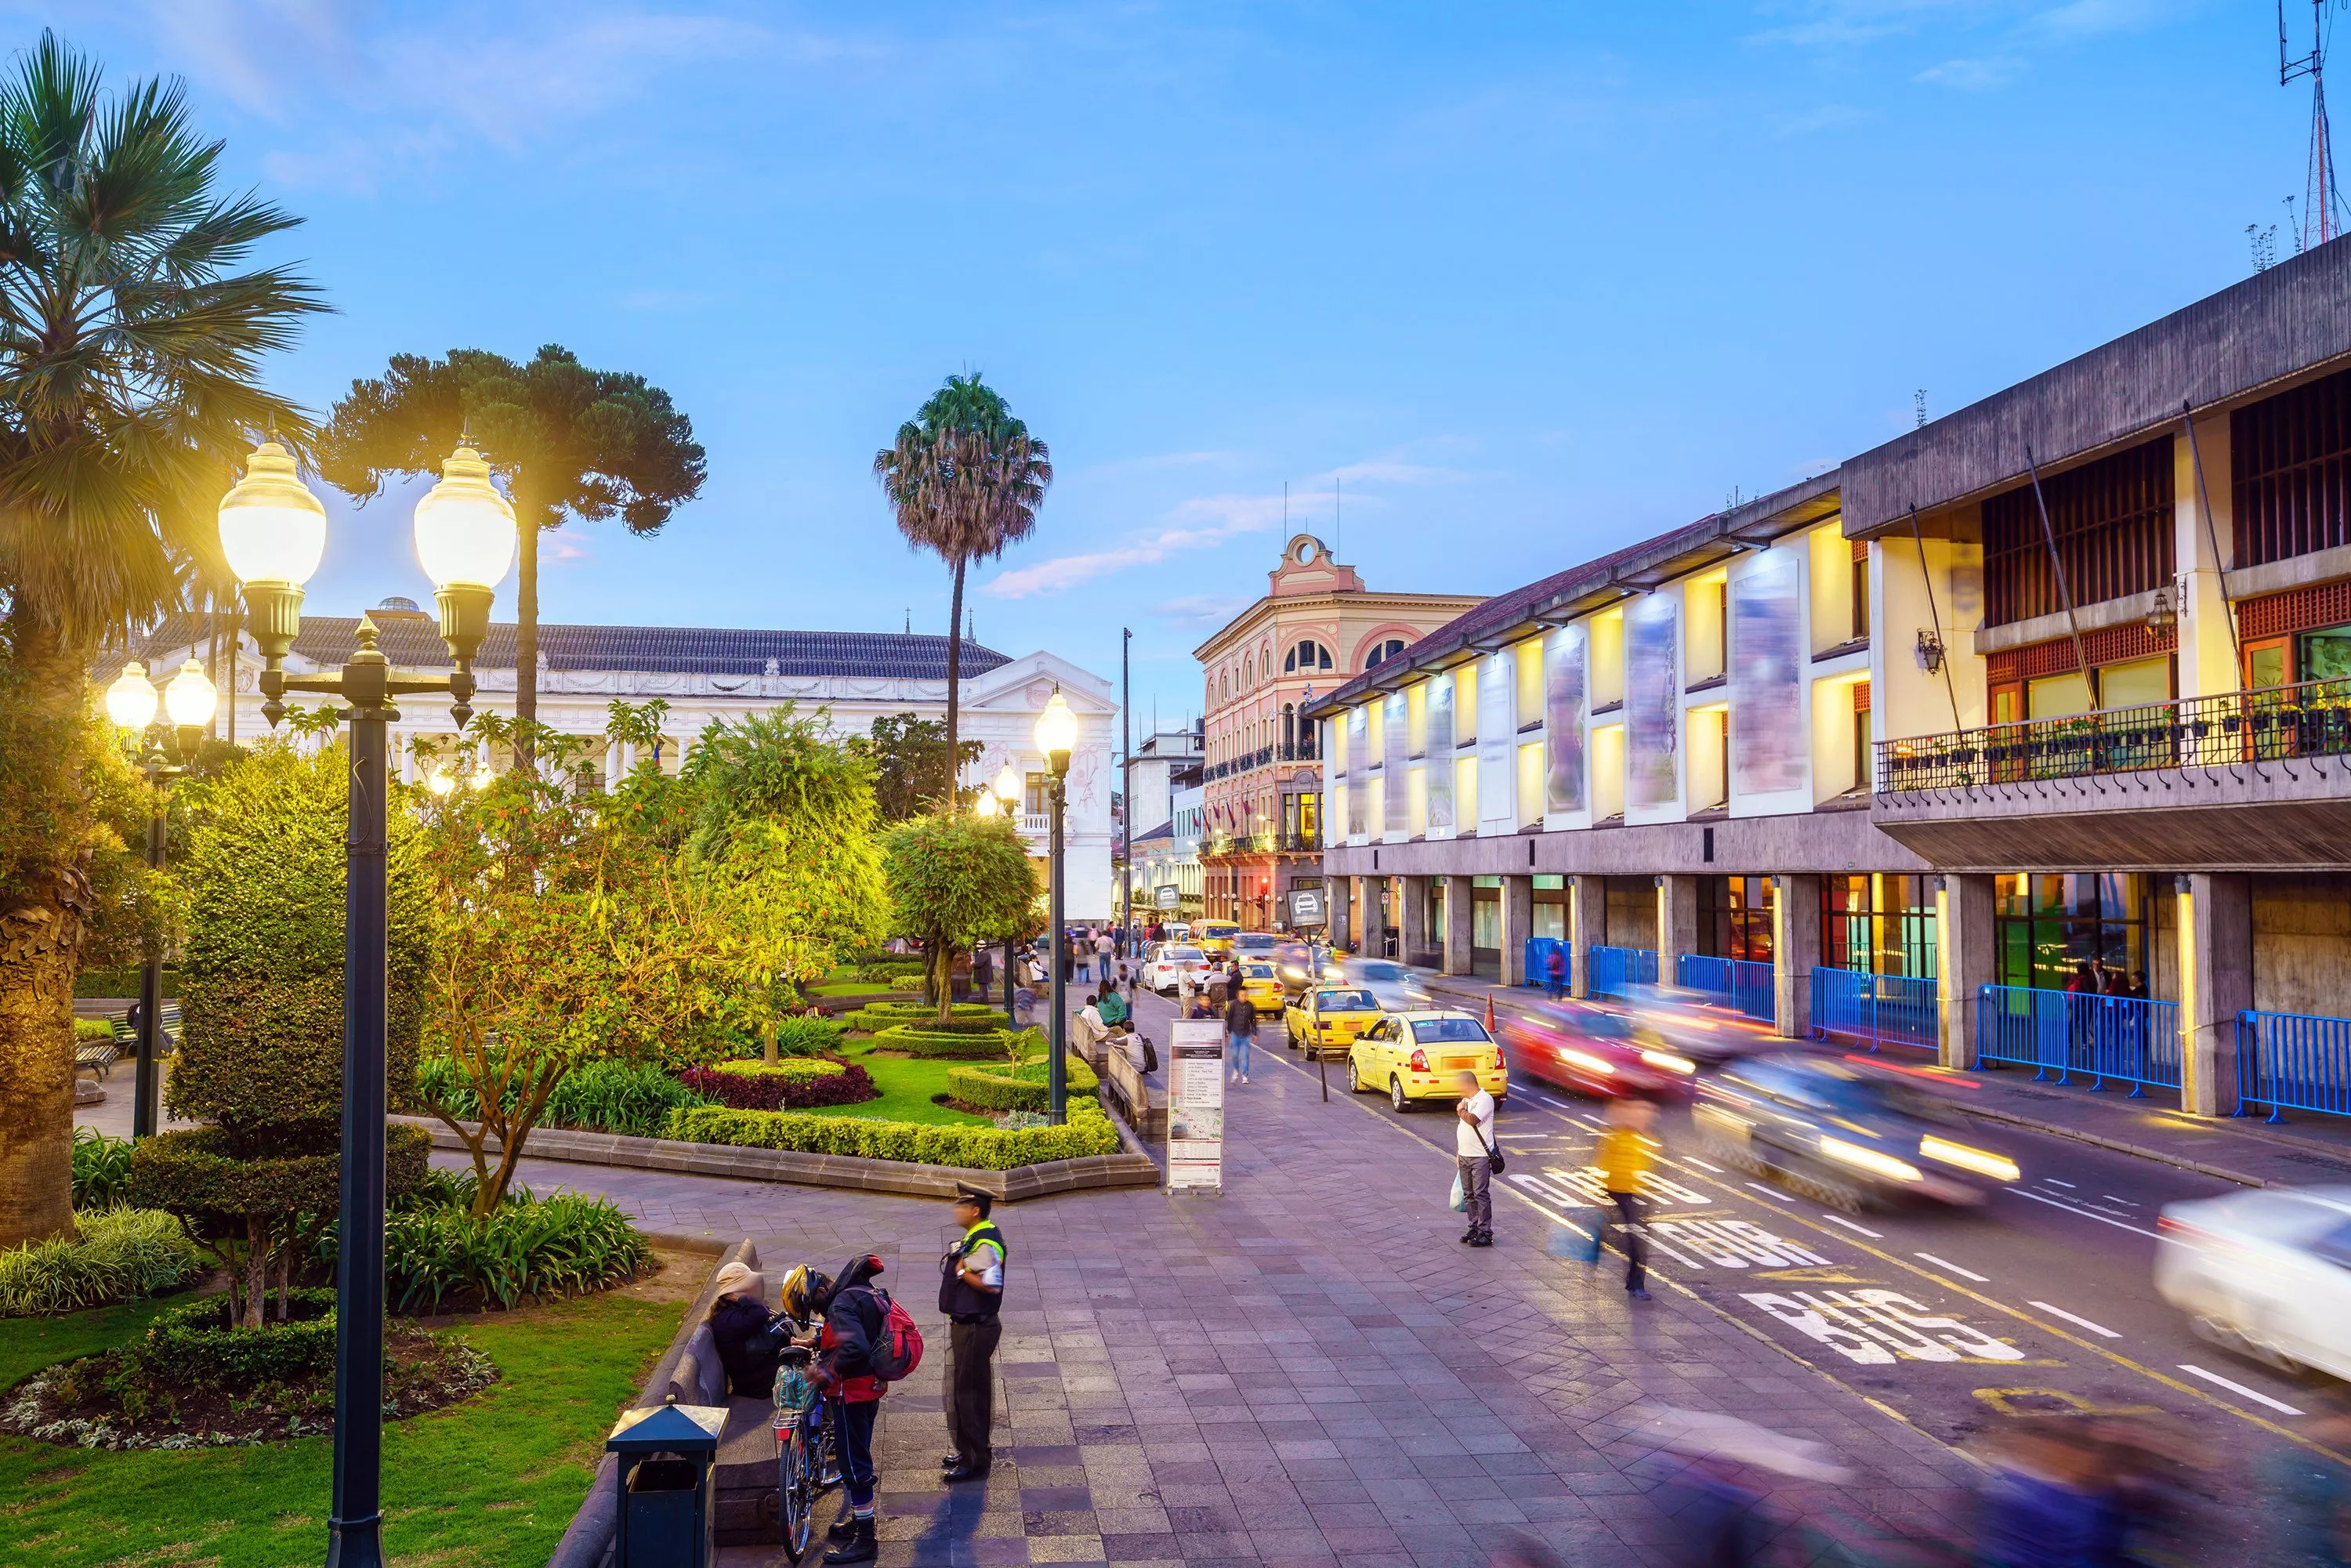 Plaza Grande in Ecuador, South America | Architecture - Rated 3.9